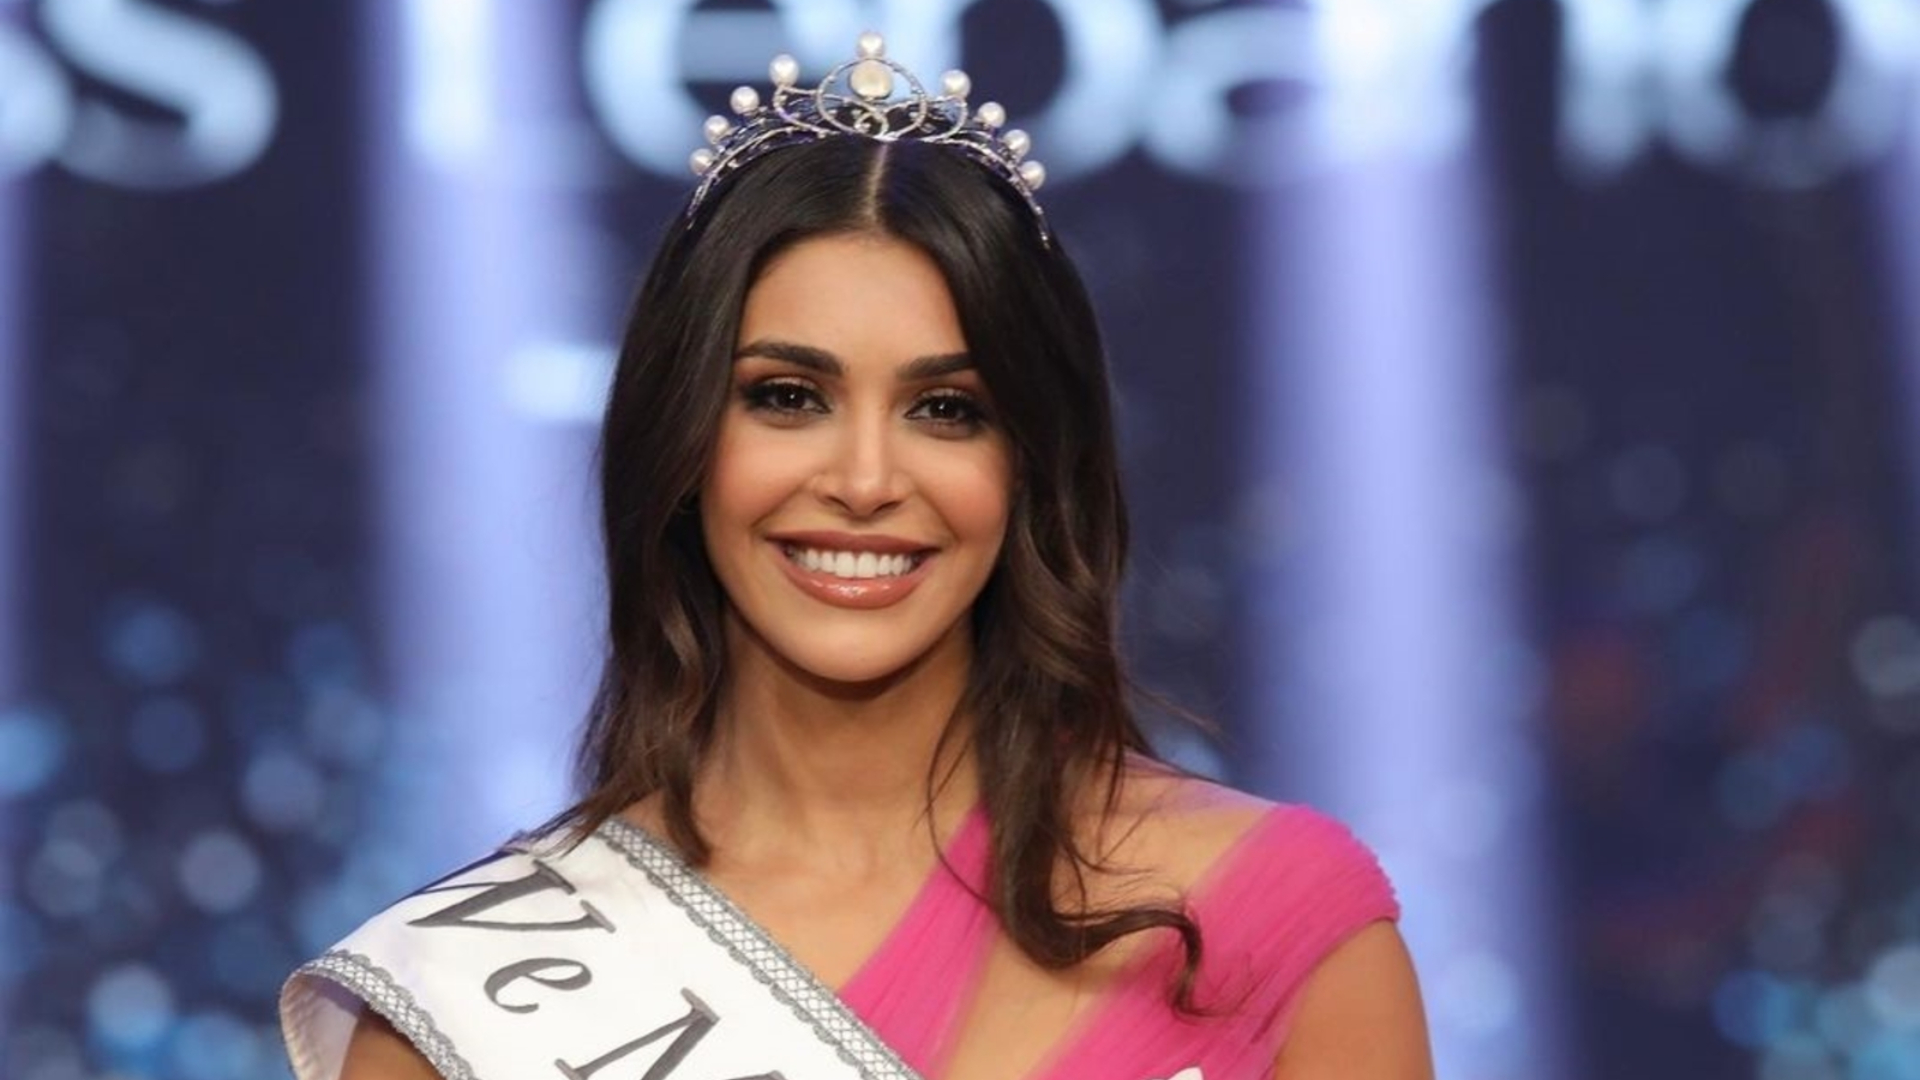 ملكة جمال لبنان ياسمينا زيتون تحقق نجاحاً إستثنائياً وتتأهل إلى مرحلة نصف النهائي في مسابقة ملكة جمال العالم